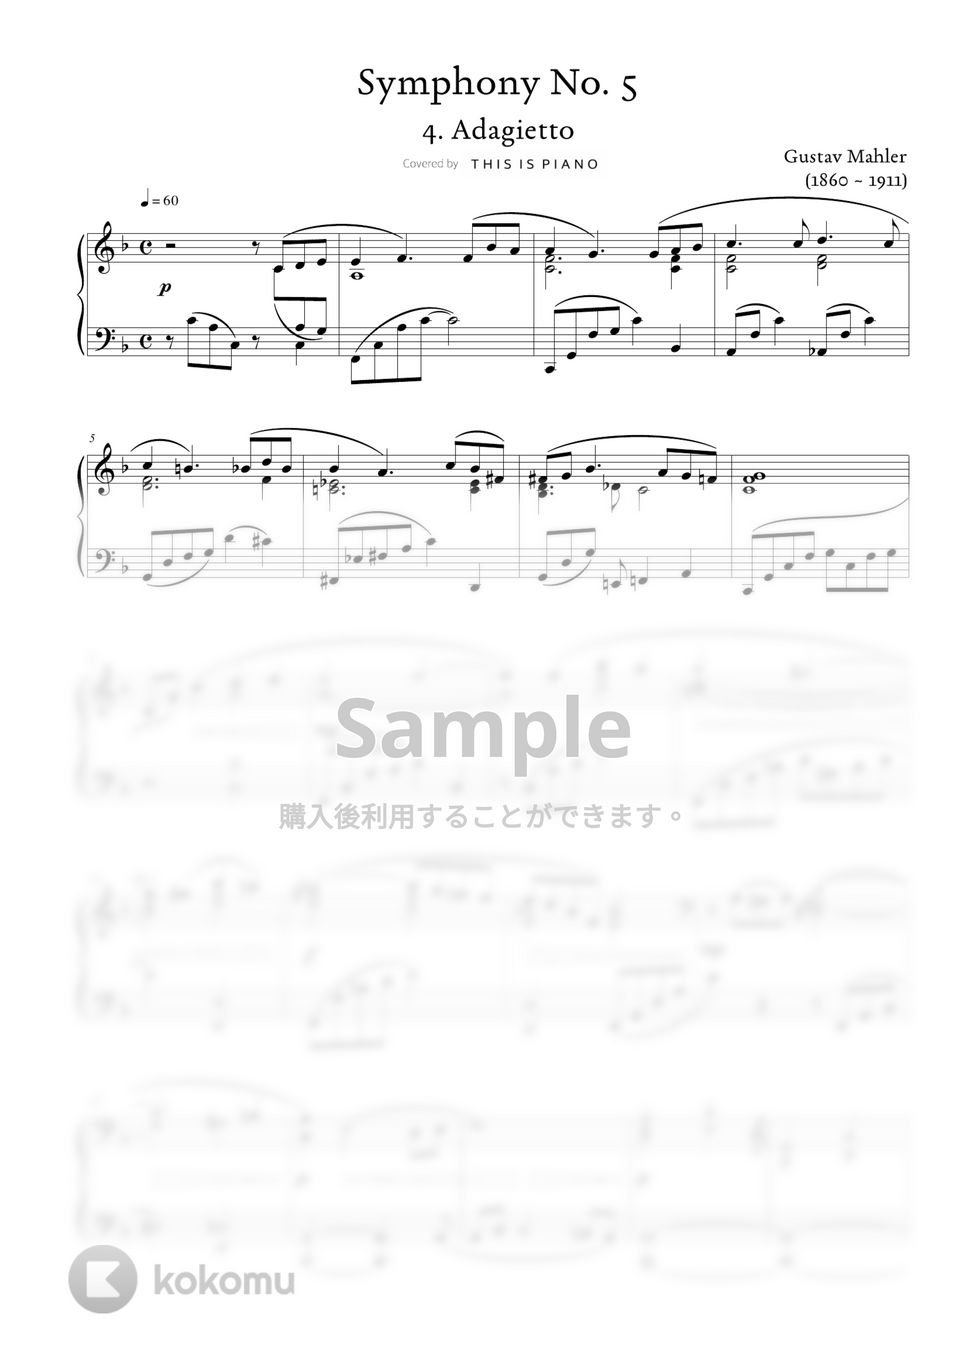 グスタフ・マーラー(Gustav Mahler) - 交響曲第５番第４楽章 ‘アダージェット(Adagietto)’ (中級バージョン) by THIS IS PIANO